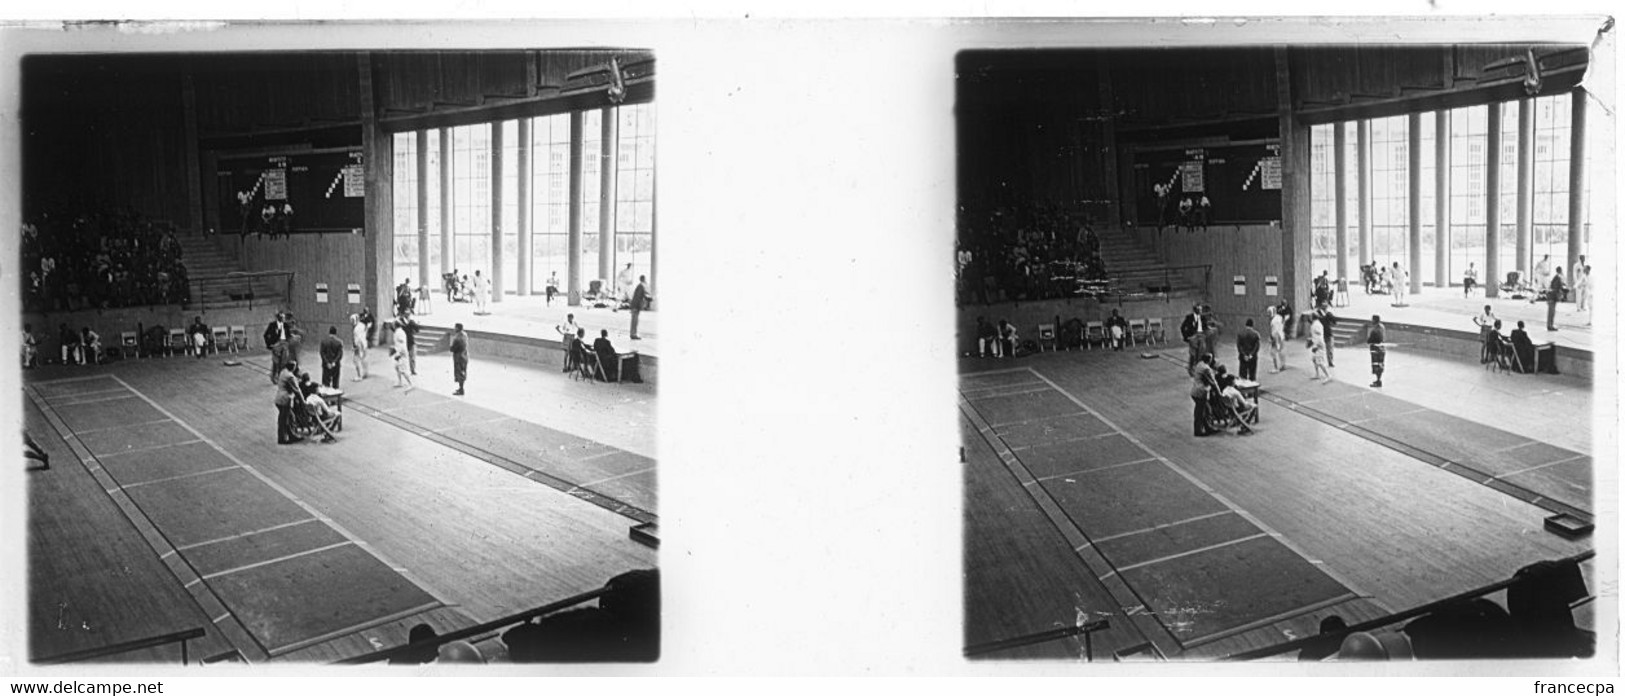 15 Plaques Photos verre - JEUX OLYMPIQUES DE BERLIN  1936 - Compétition d'Escrime -